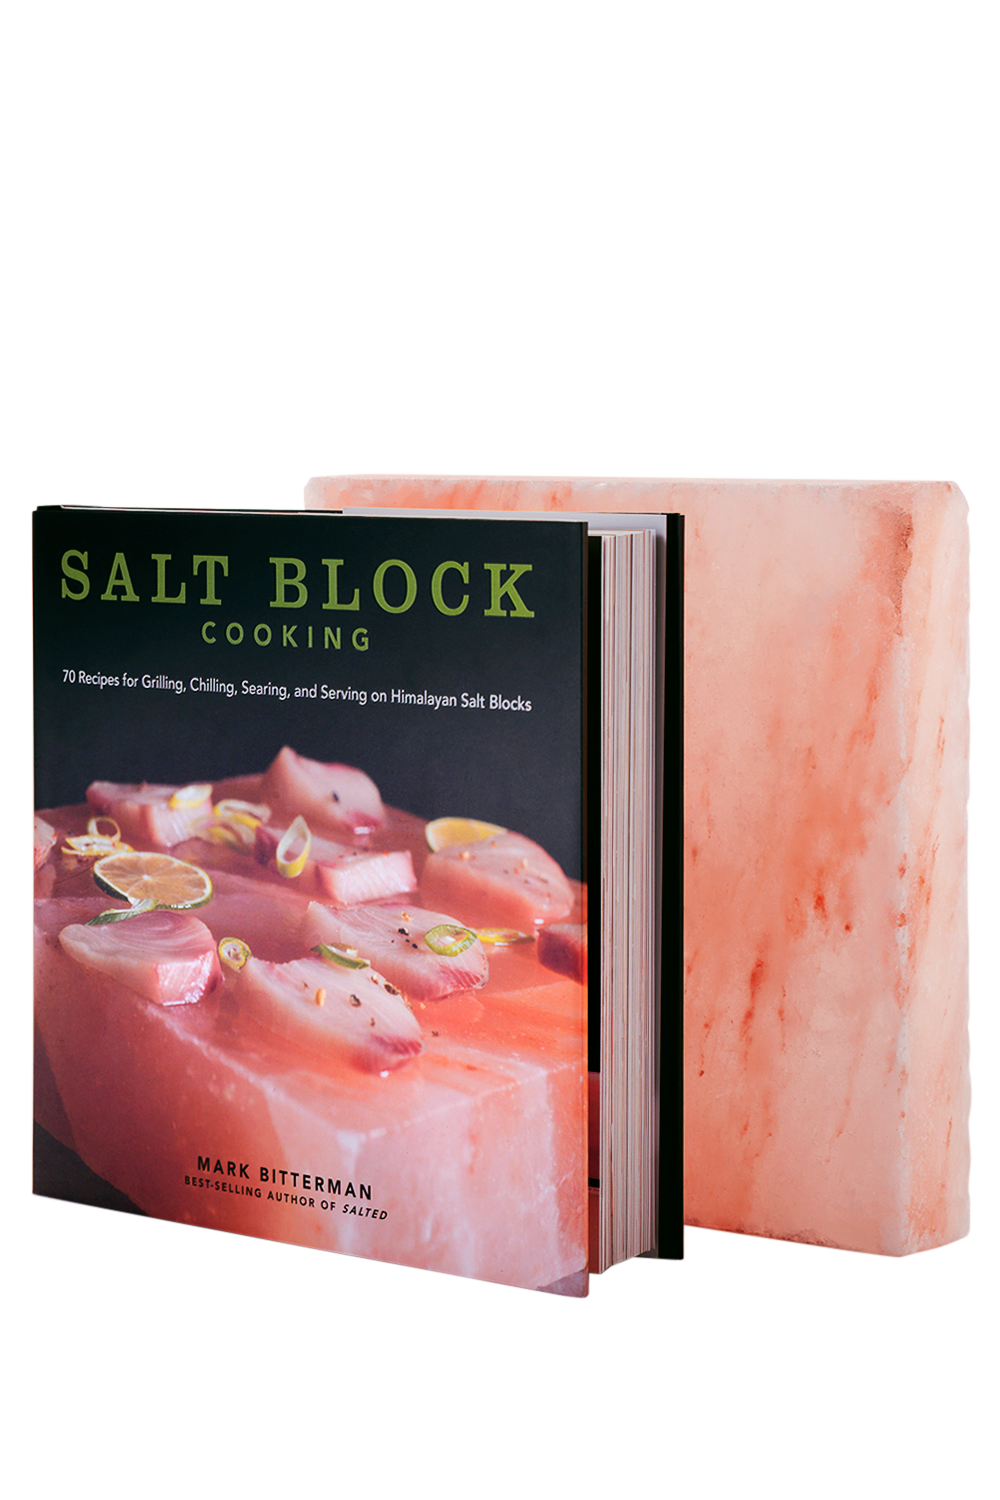 salt-block-cooking-8x8x1-5-himalayan-salt-block-combo